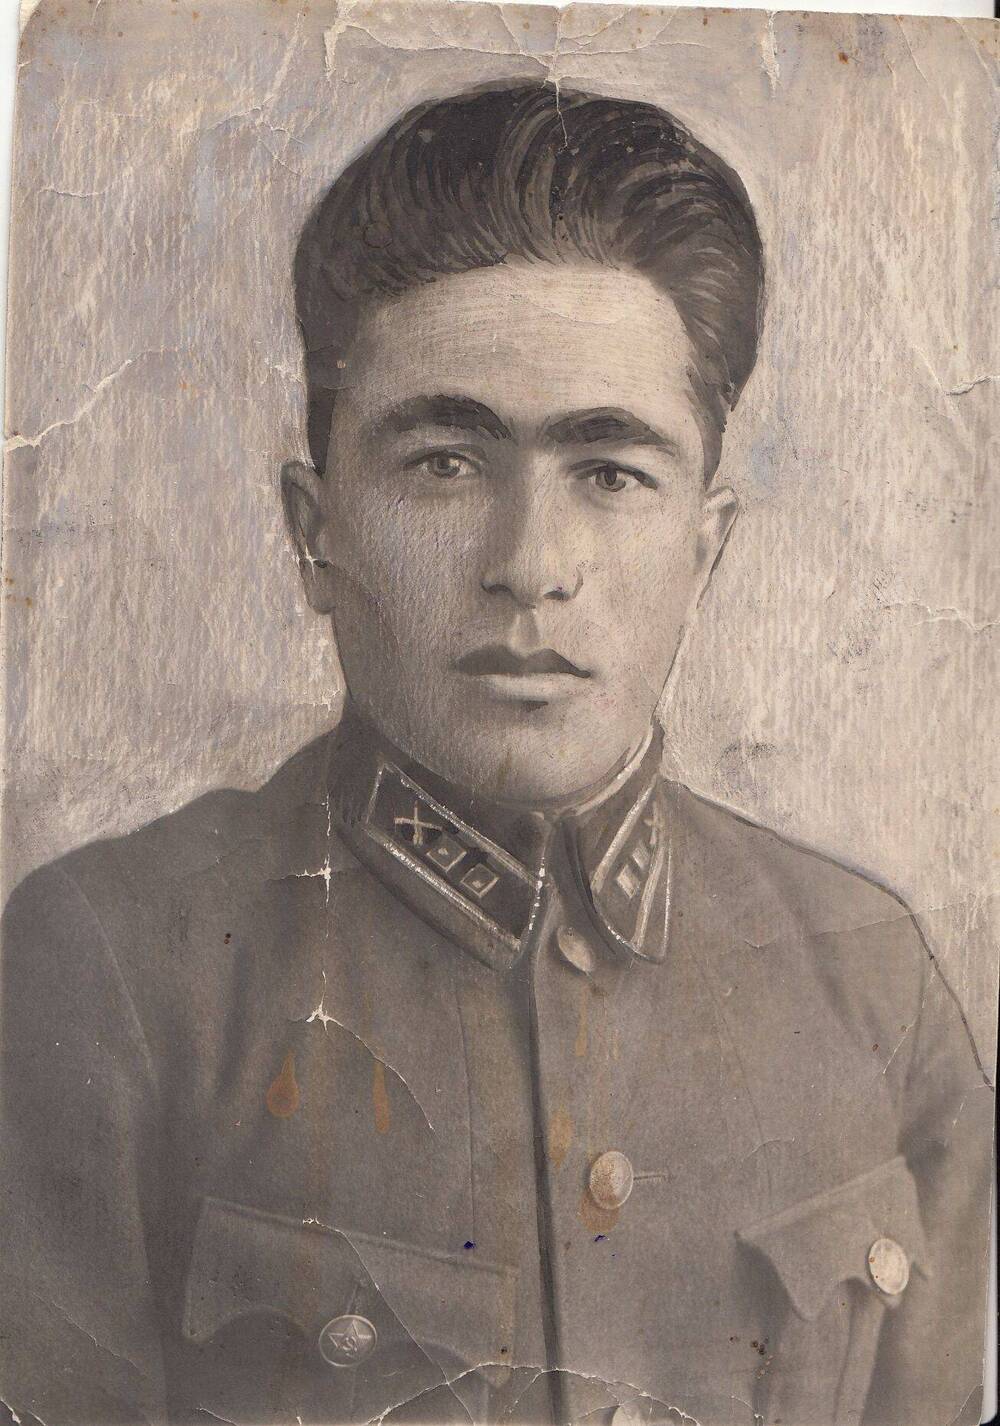 Фотография: Мусеридзе Ирадион Илларионович, бывший командир огневого взвода Подольского артиллерийского училища